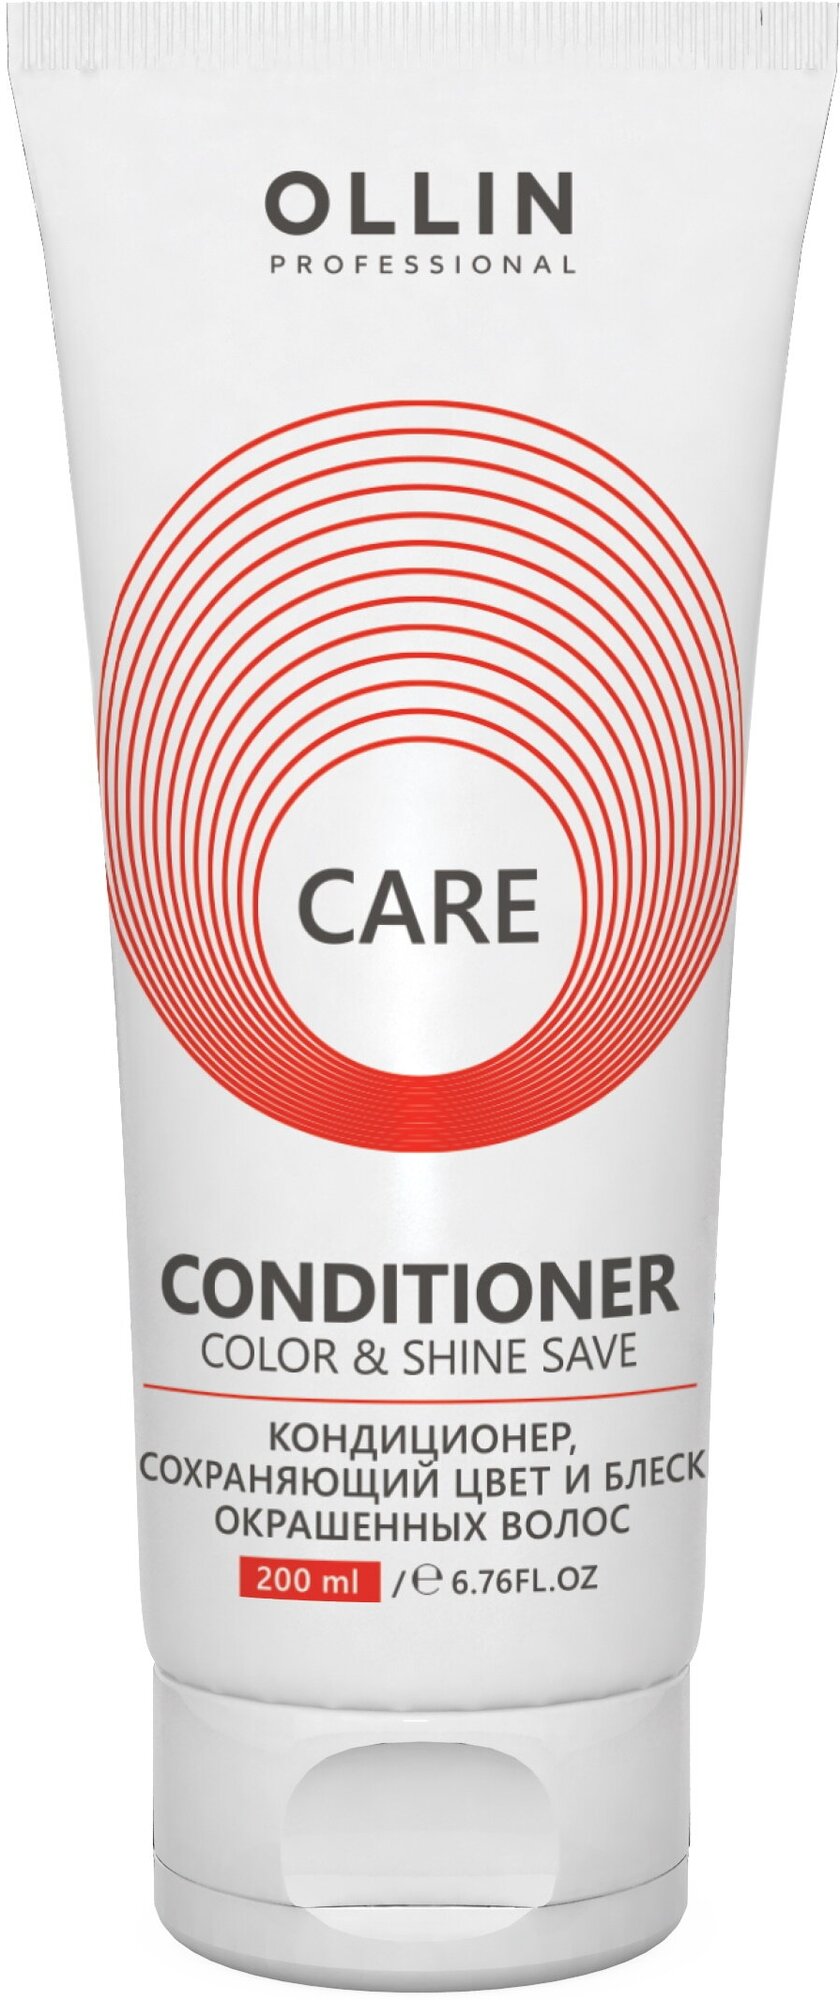 Кондиционер CARE для окрашенных волос OLLIN PROFESSIONAL color & shine save 200 мл